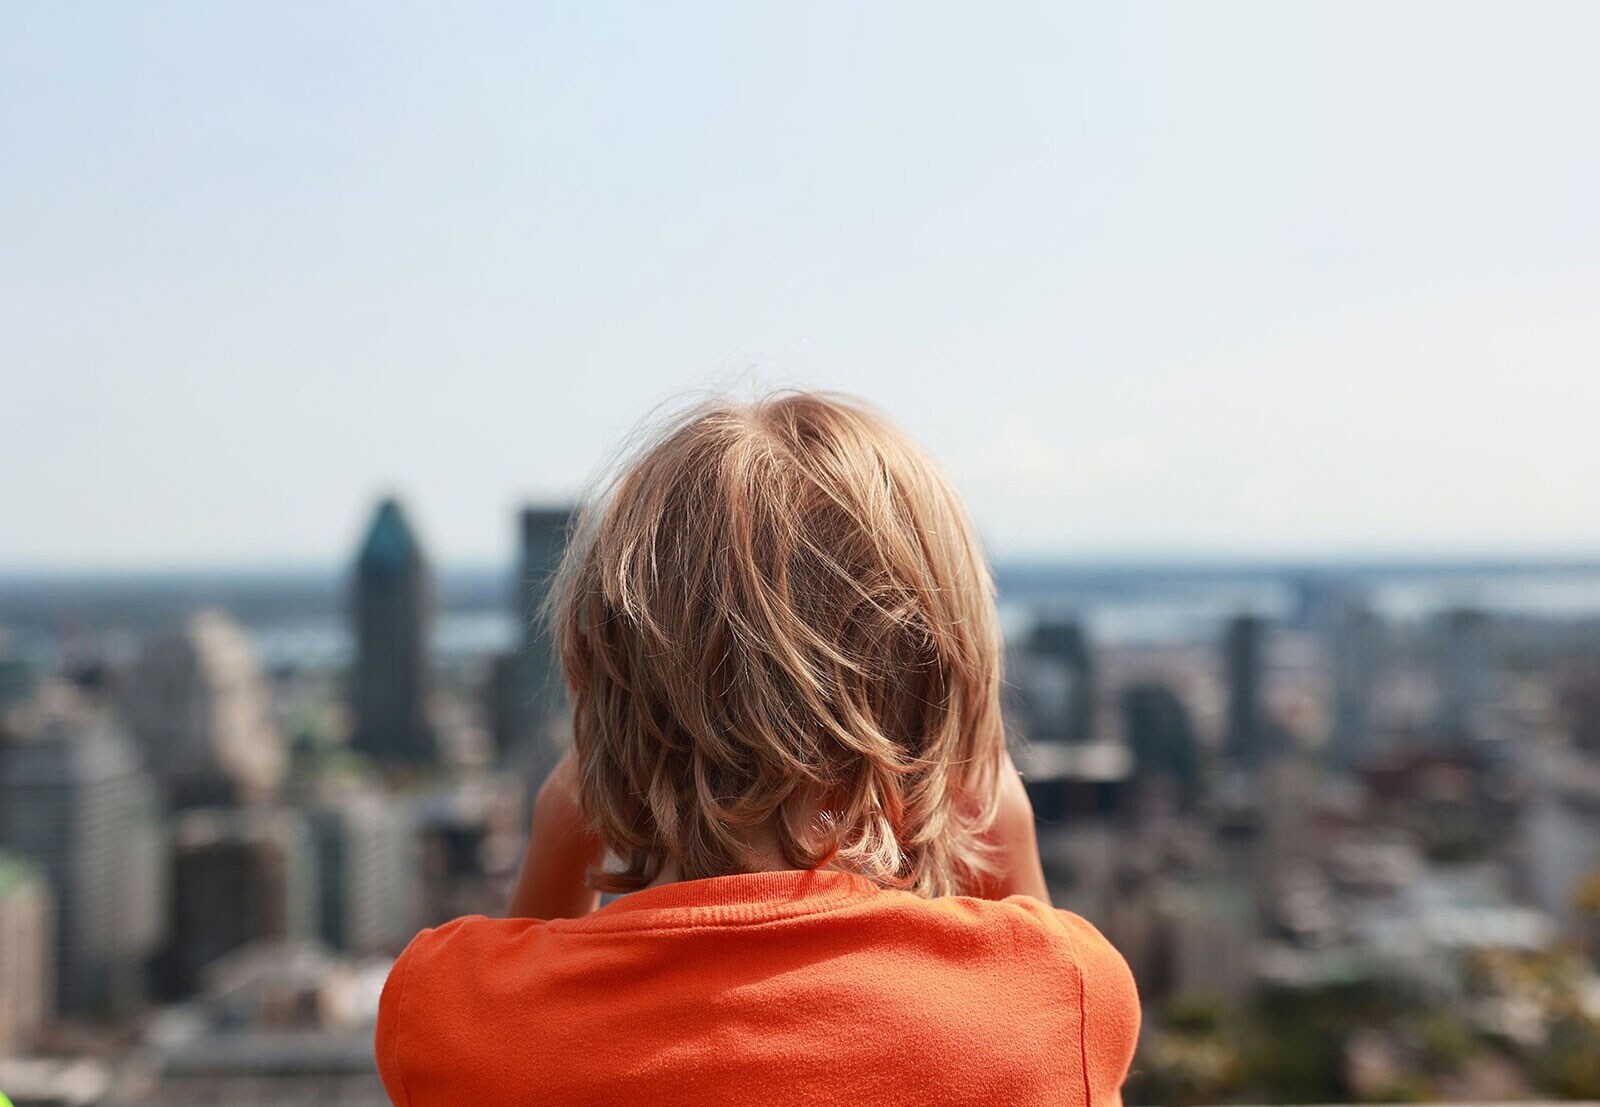 Ένα άτομο κοιτάει προς το αστικό τοπίο με ψηλά κτίρια και ουρανοξύστες.